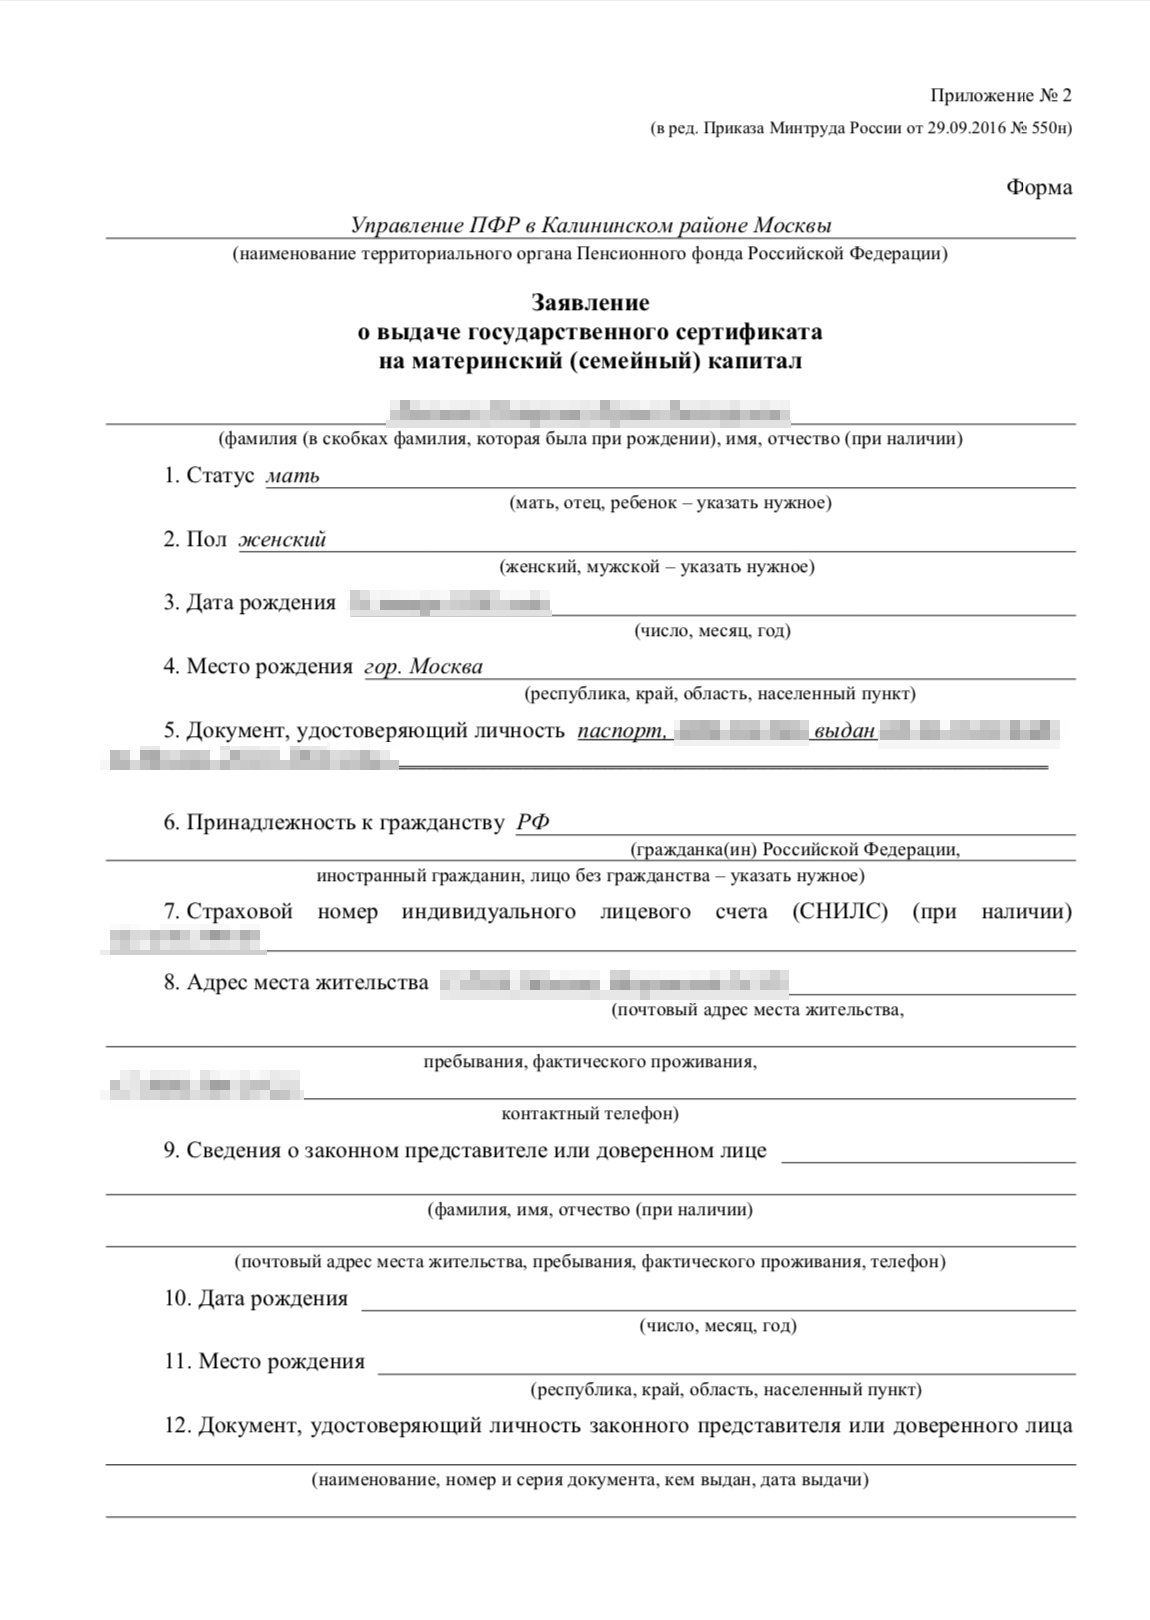 3350 семей Пермского края получают ежемесячную выплату из средств материнского капитала